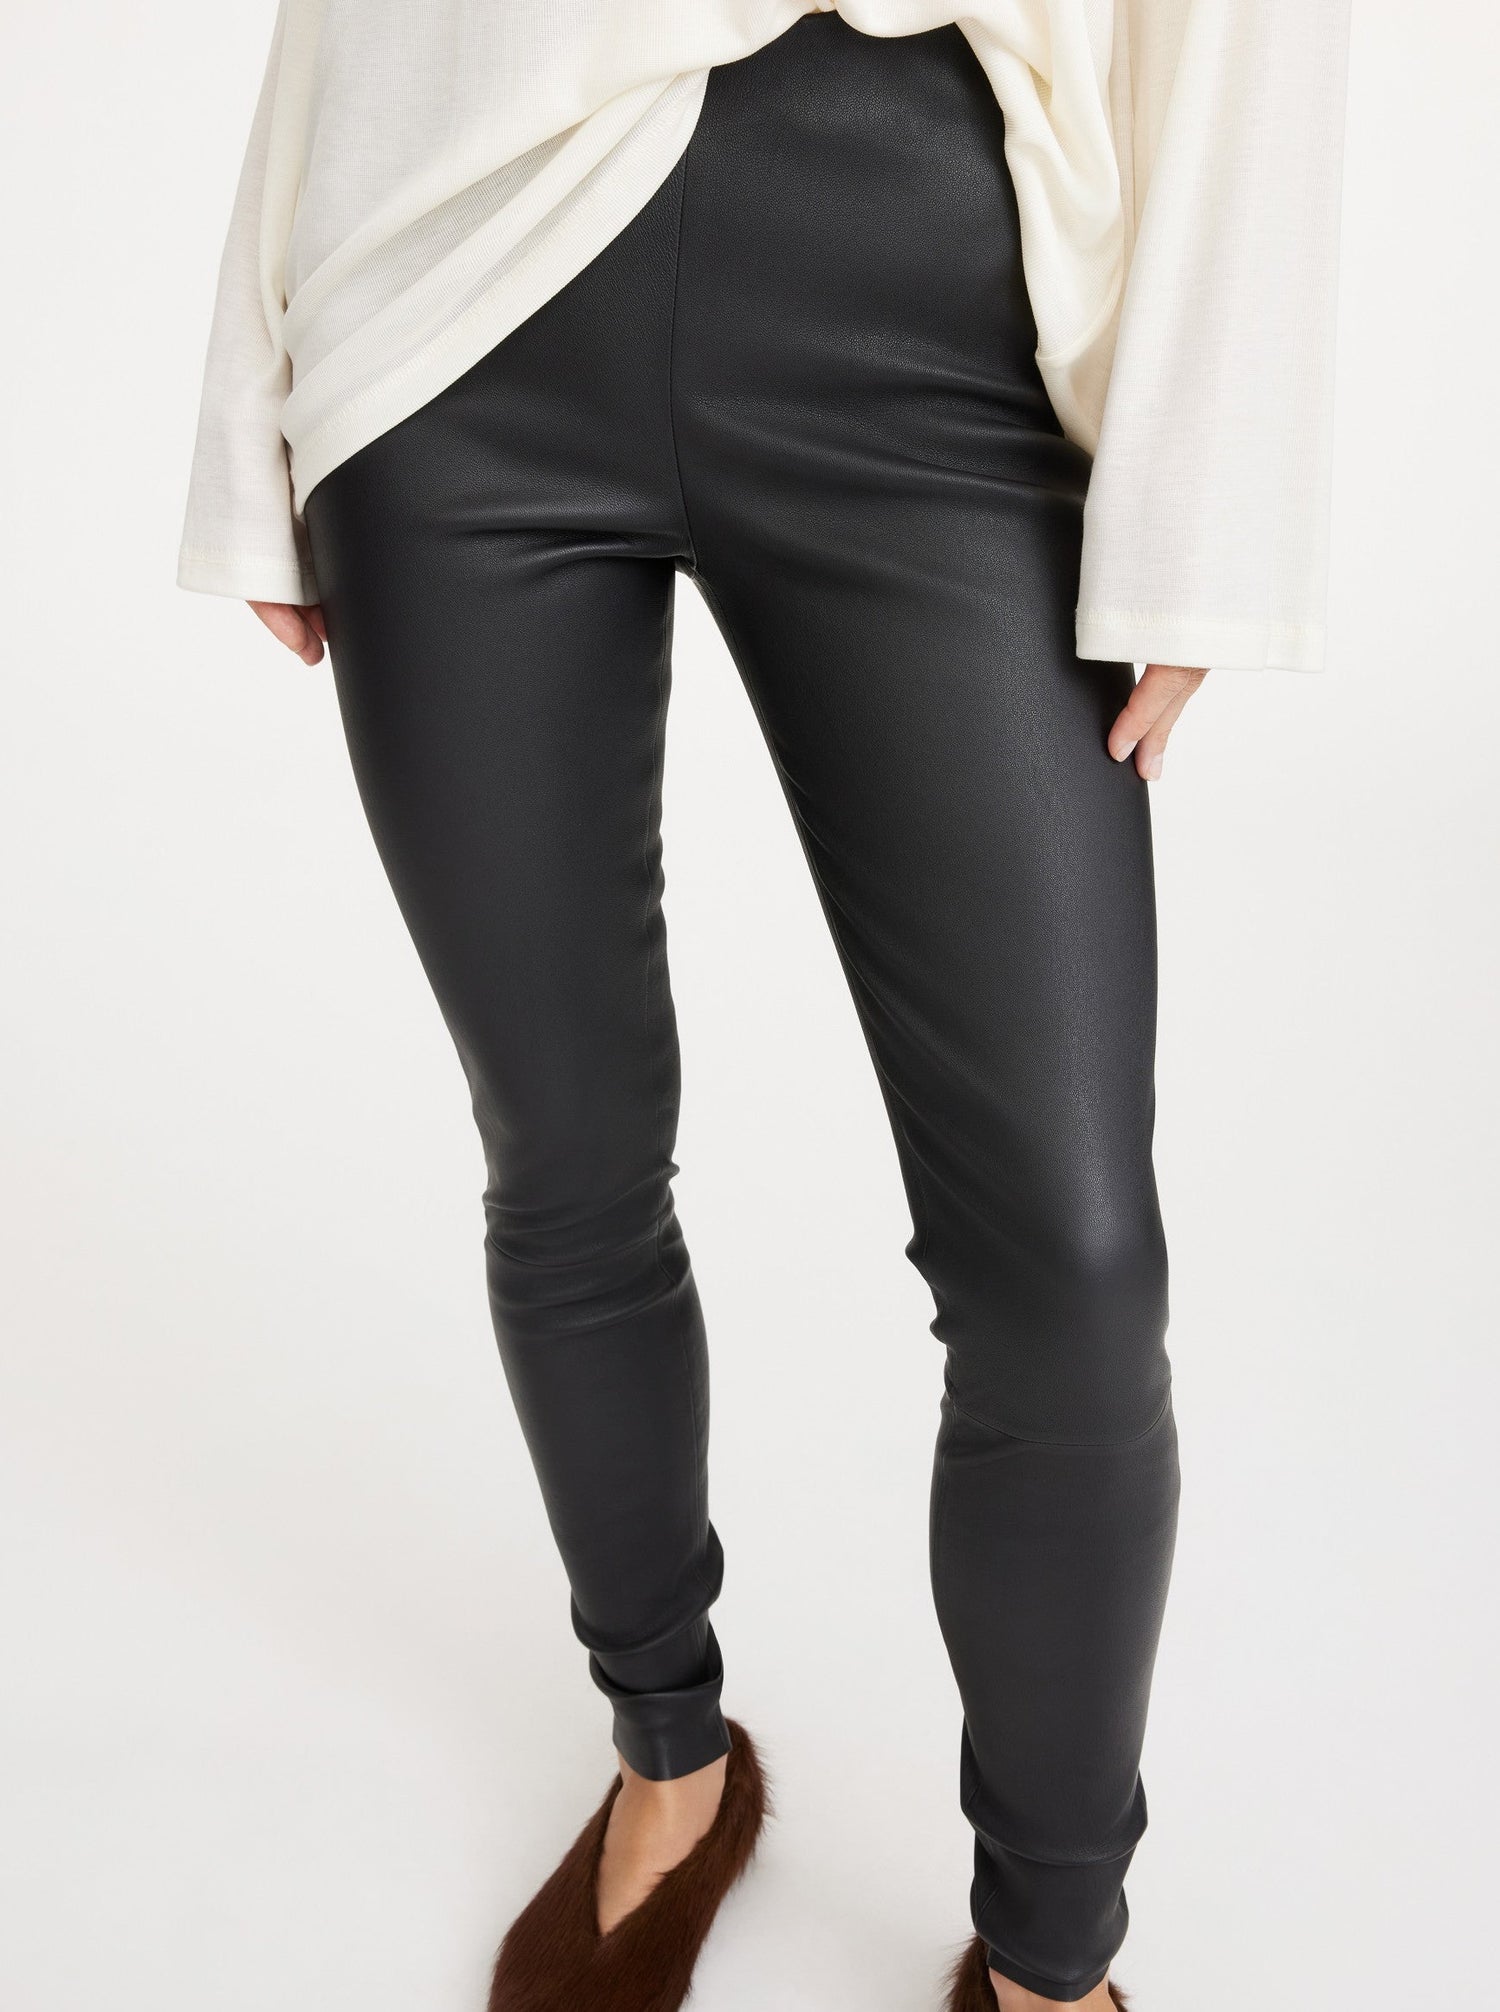 Elenasoo leather leggings, black